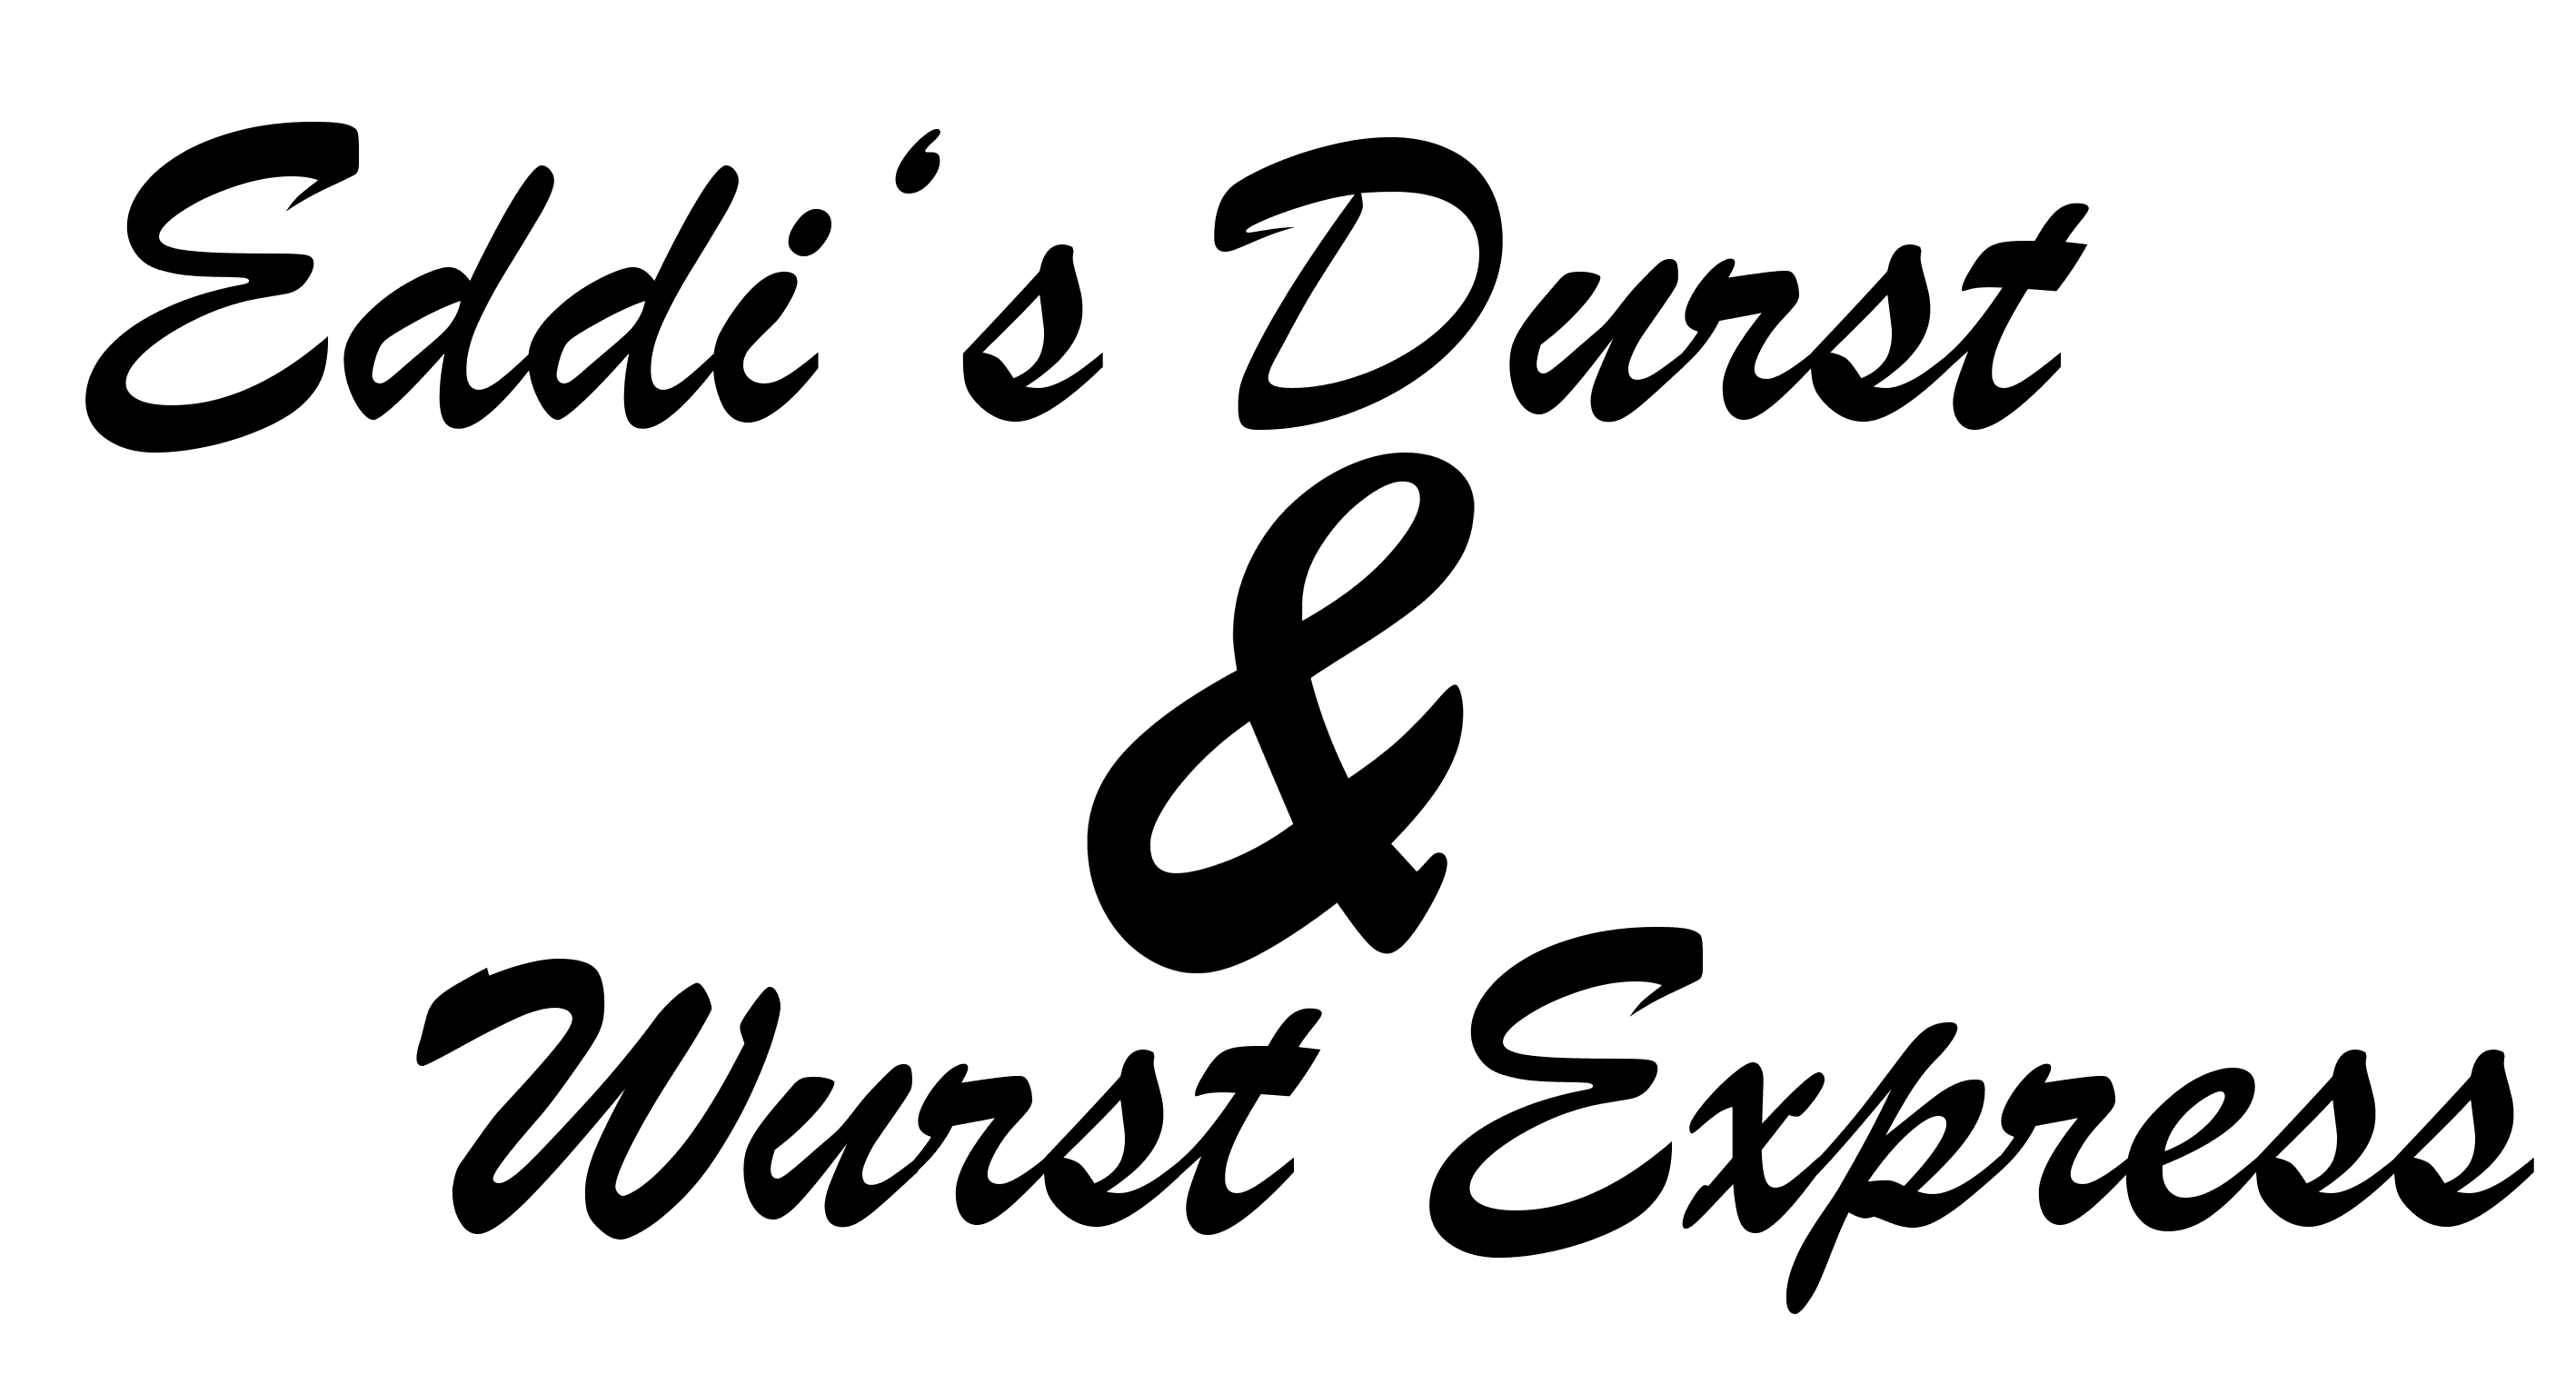 Eddis Durst und Wurst Express